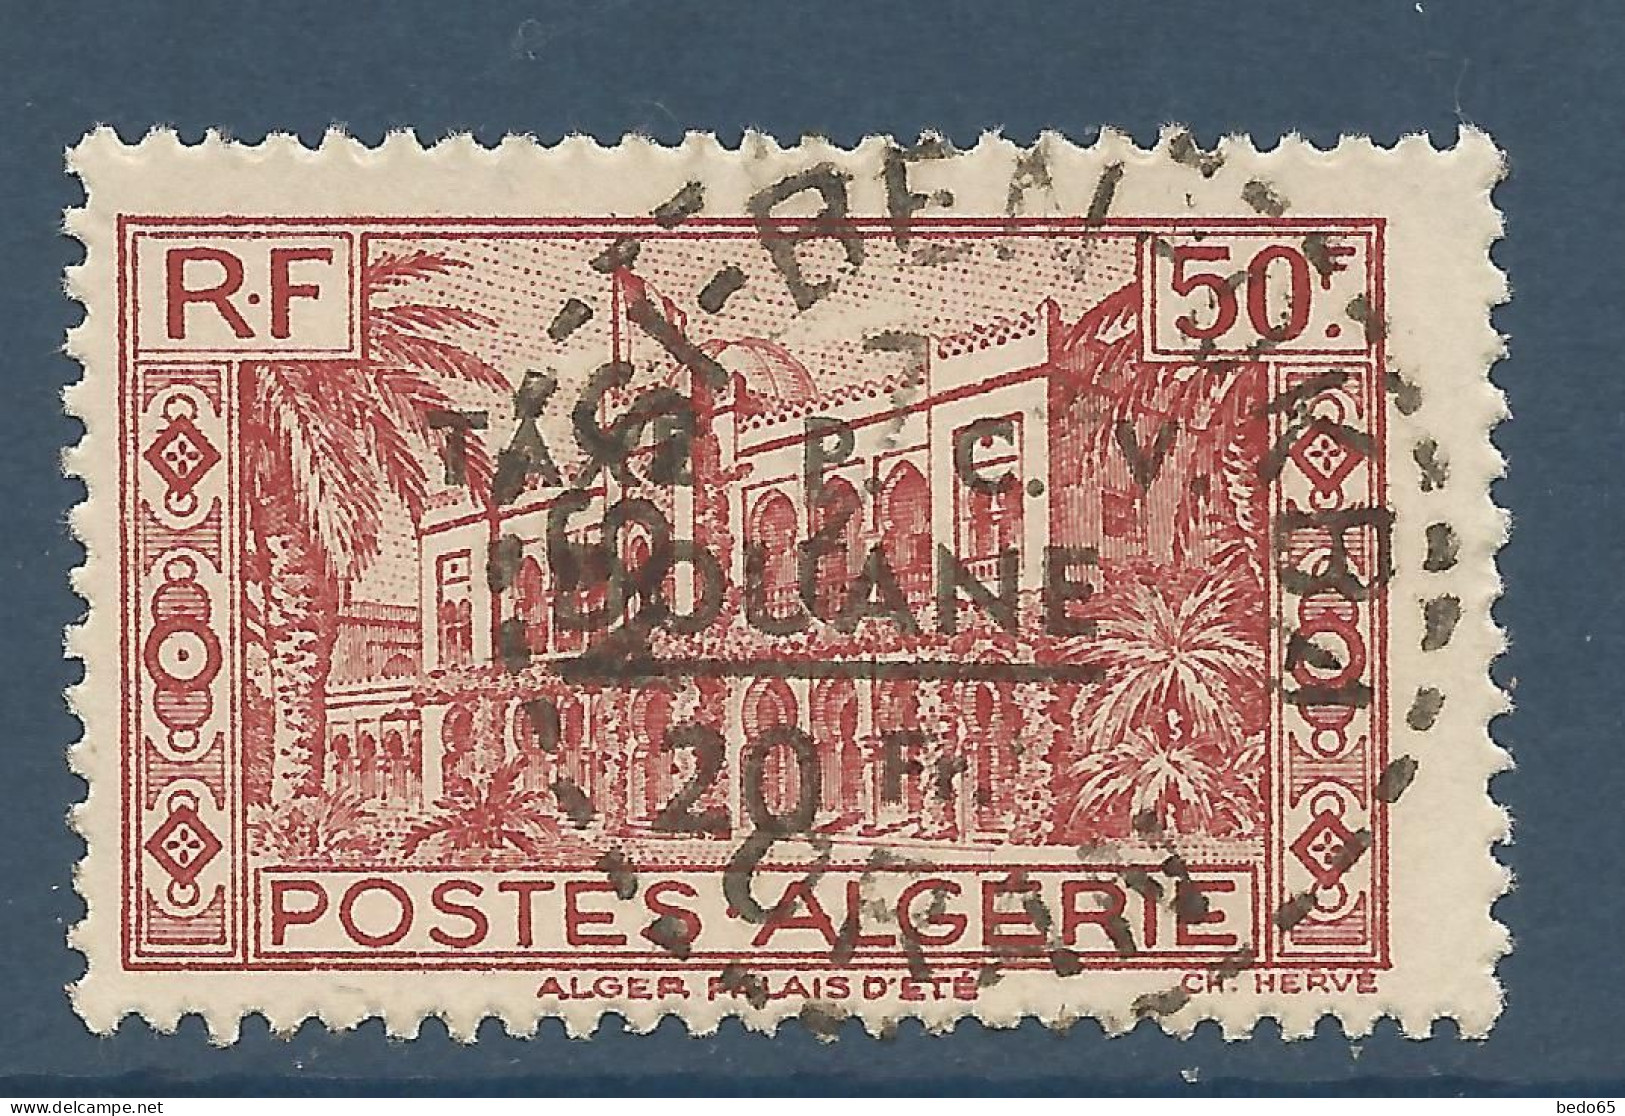 ALGERIE N° 202 CACHET ASSI-BEN-OKBA/ Used - Used Stamps